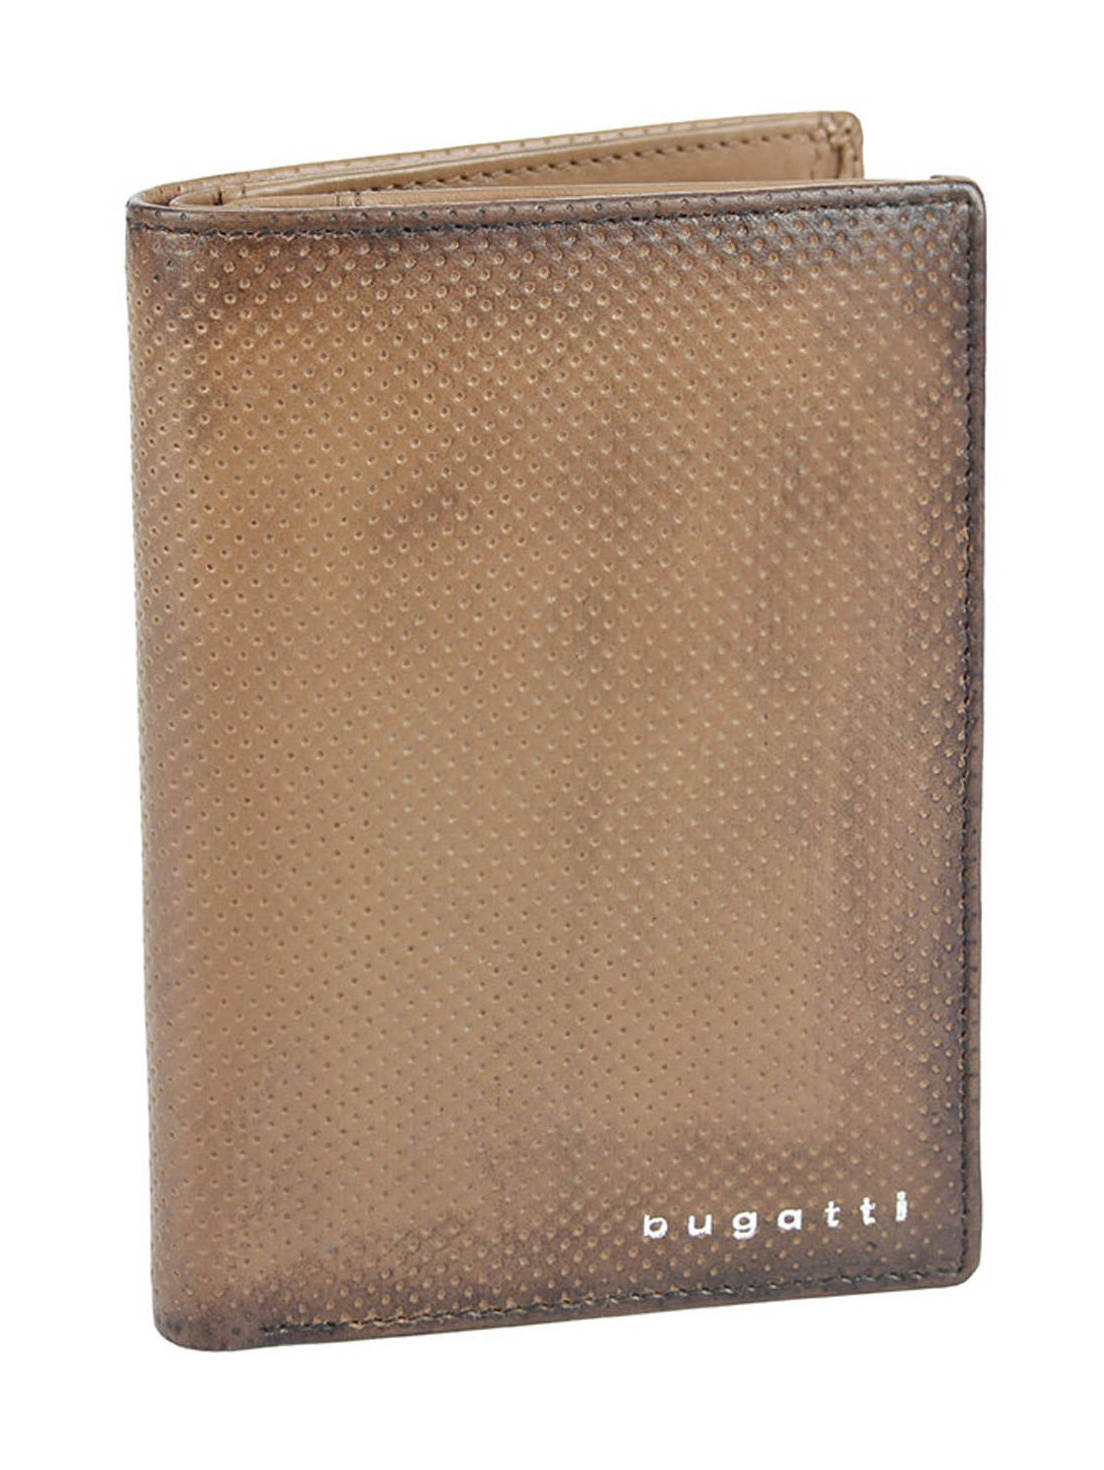 Pánská peněženka Bugatti Perfo flap L 493971-02 hnědá